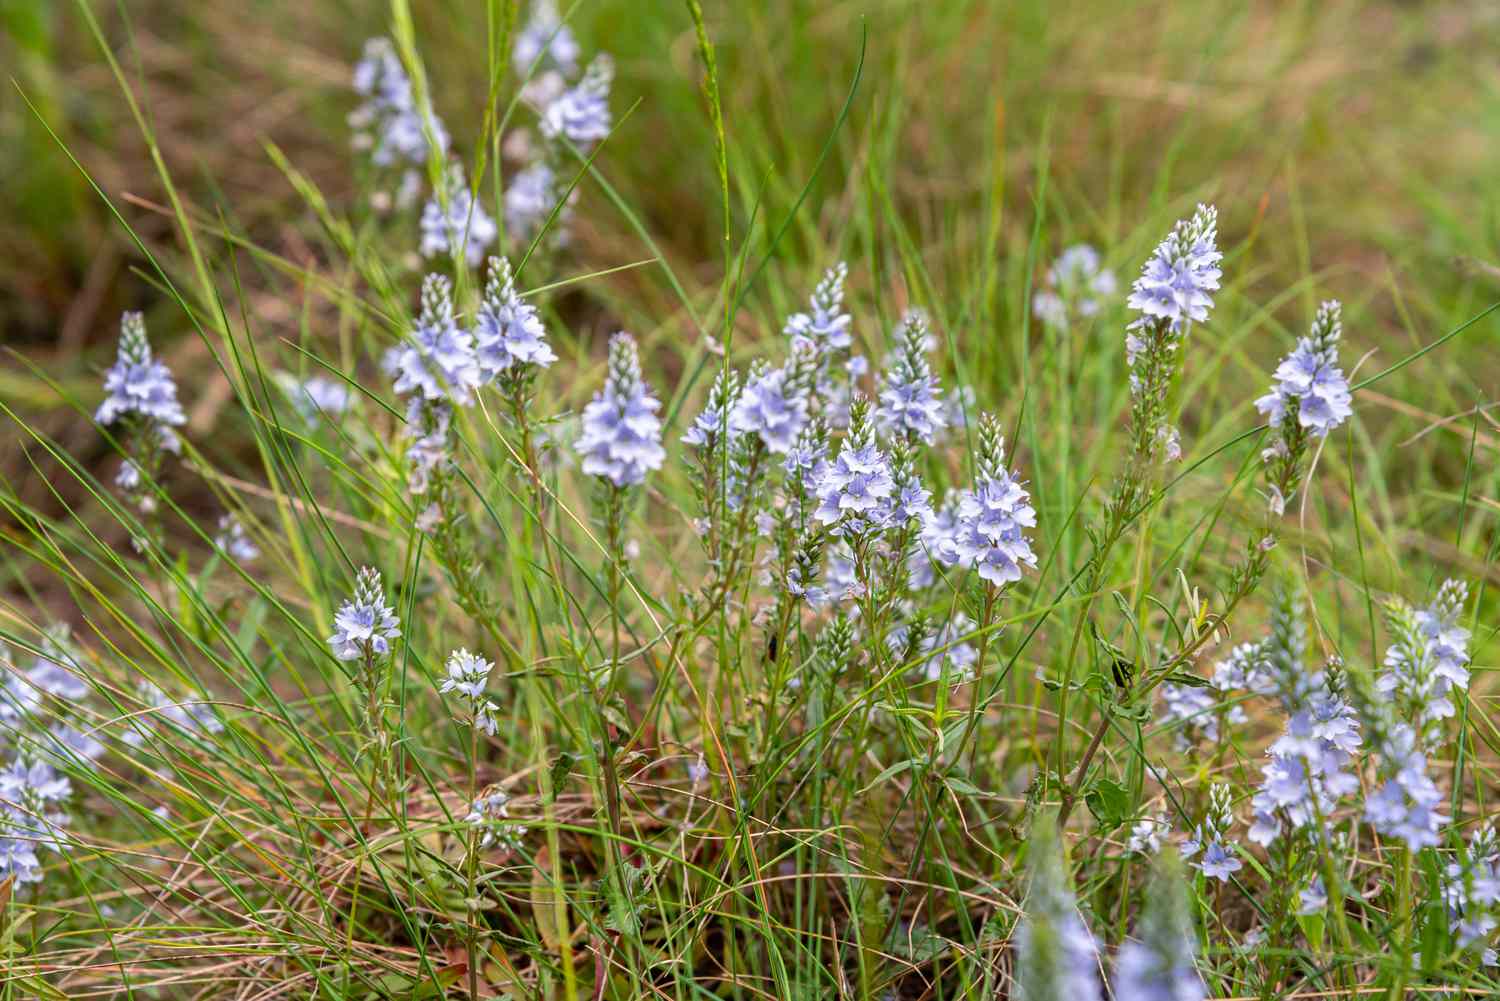 Veronika-Pflanze mit kleinen hellvioletten Blütenähren, umgeben von Gras